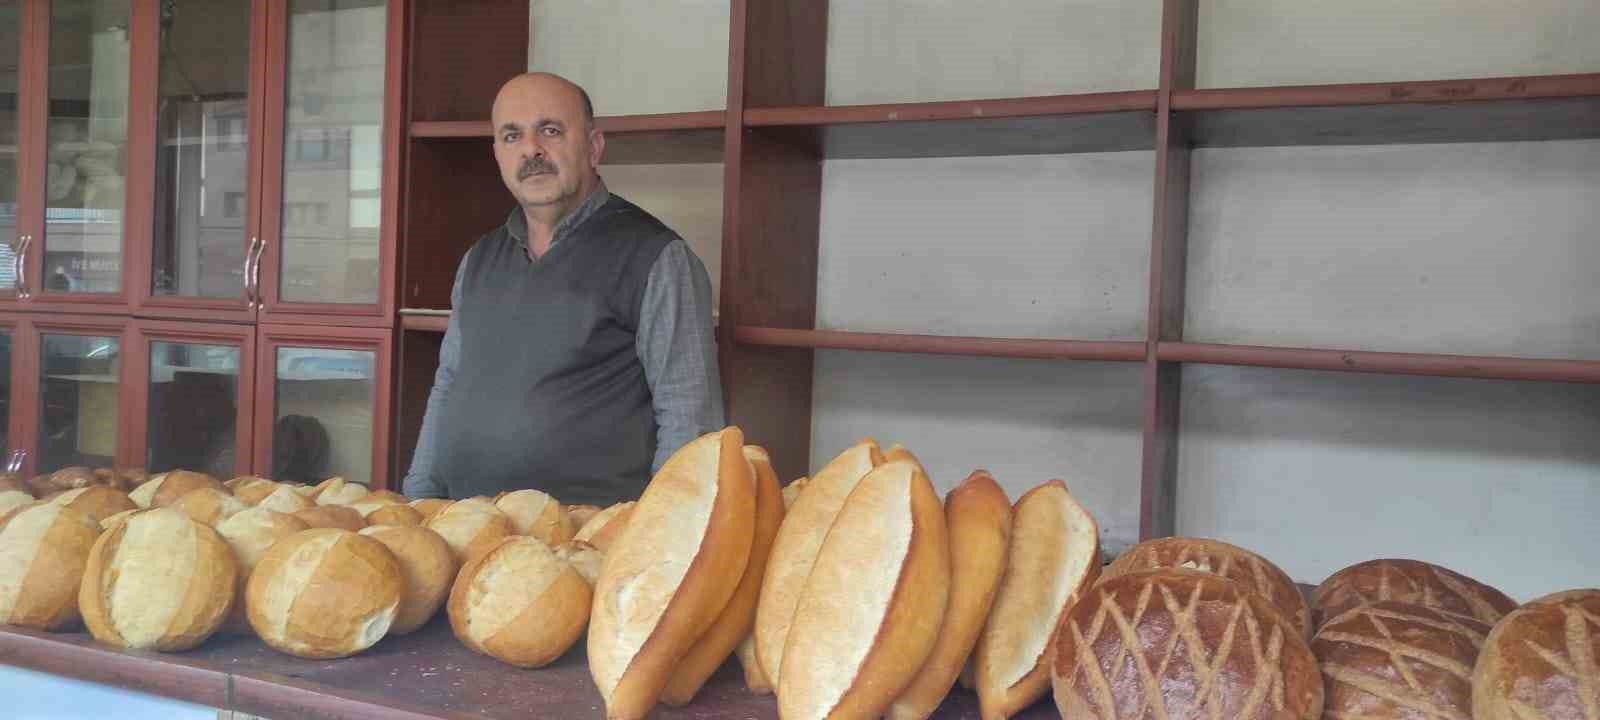 Yozgat’ta ekmek 8 liradan satılmaya başlandı